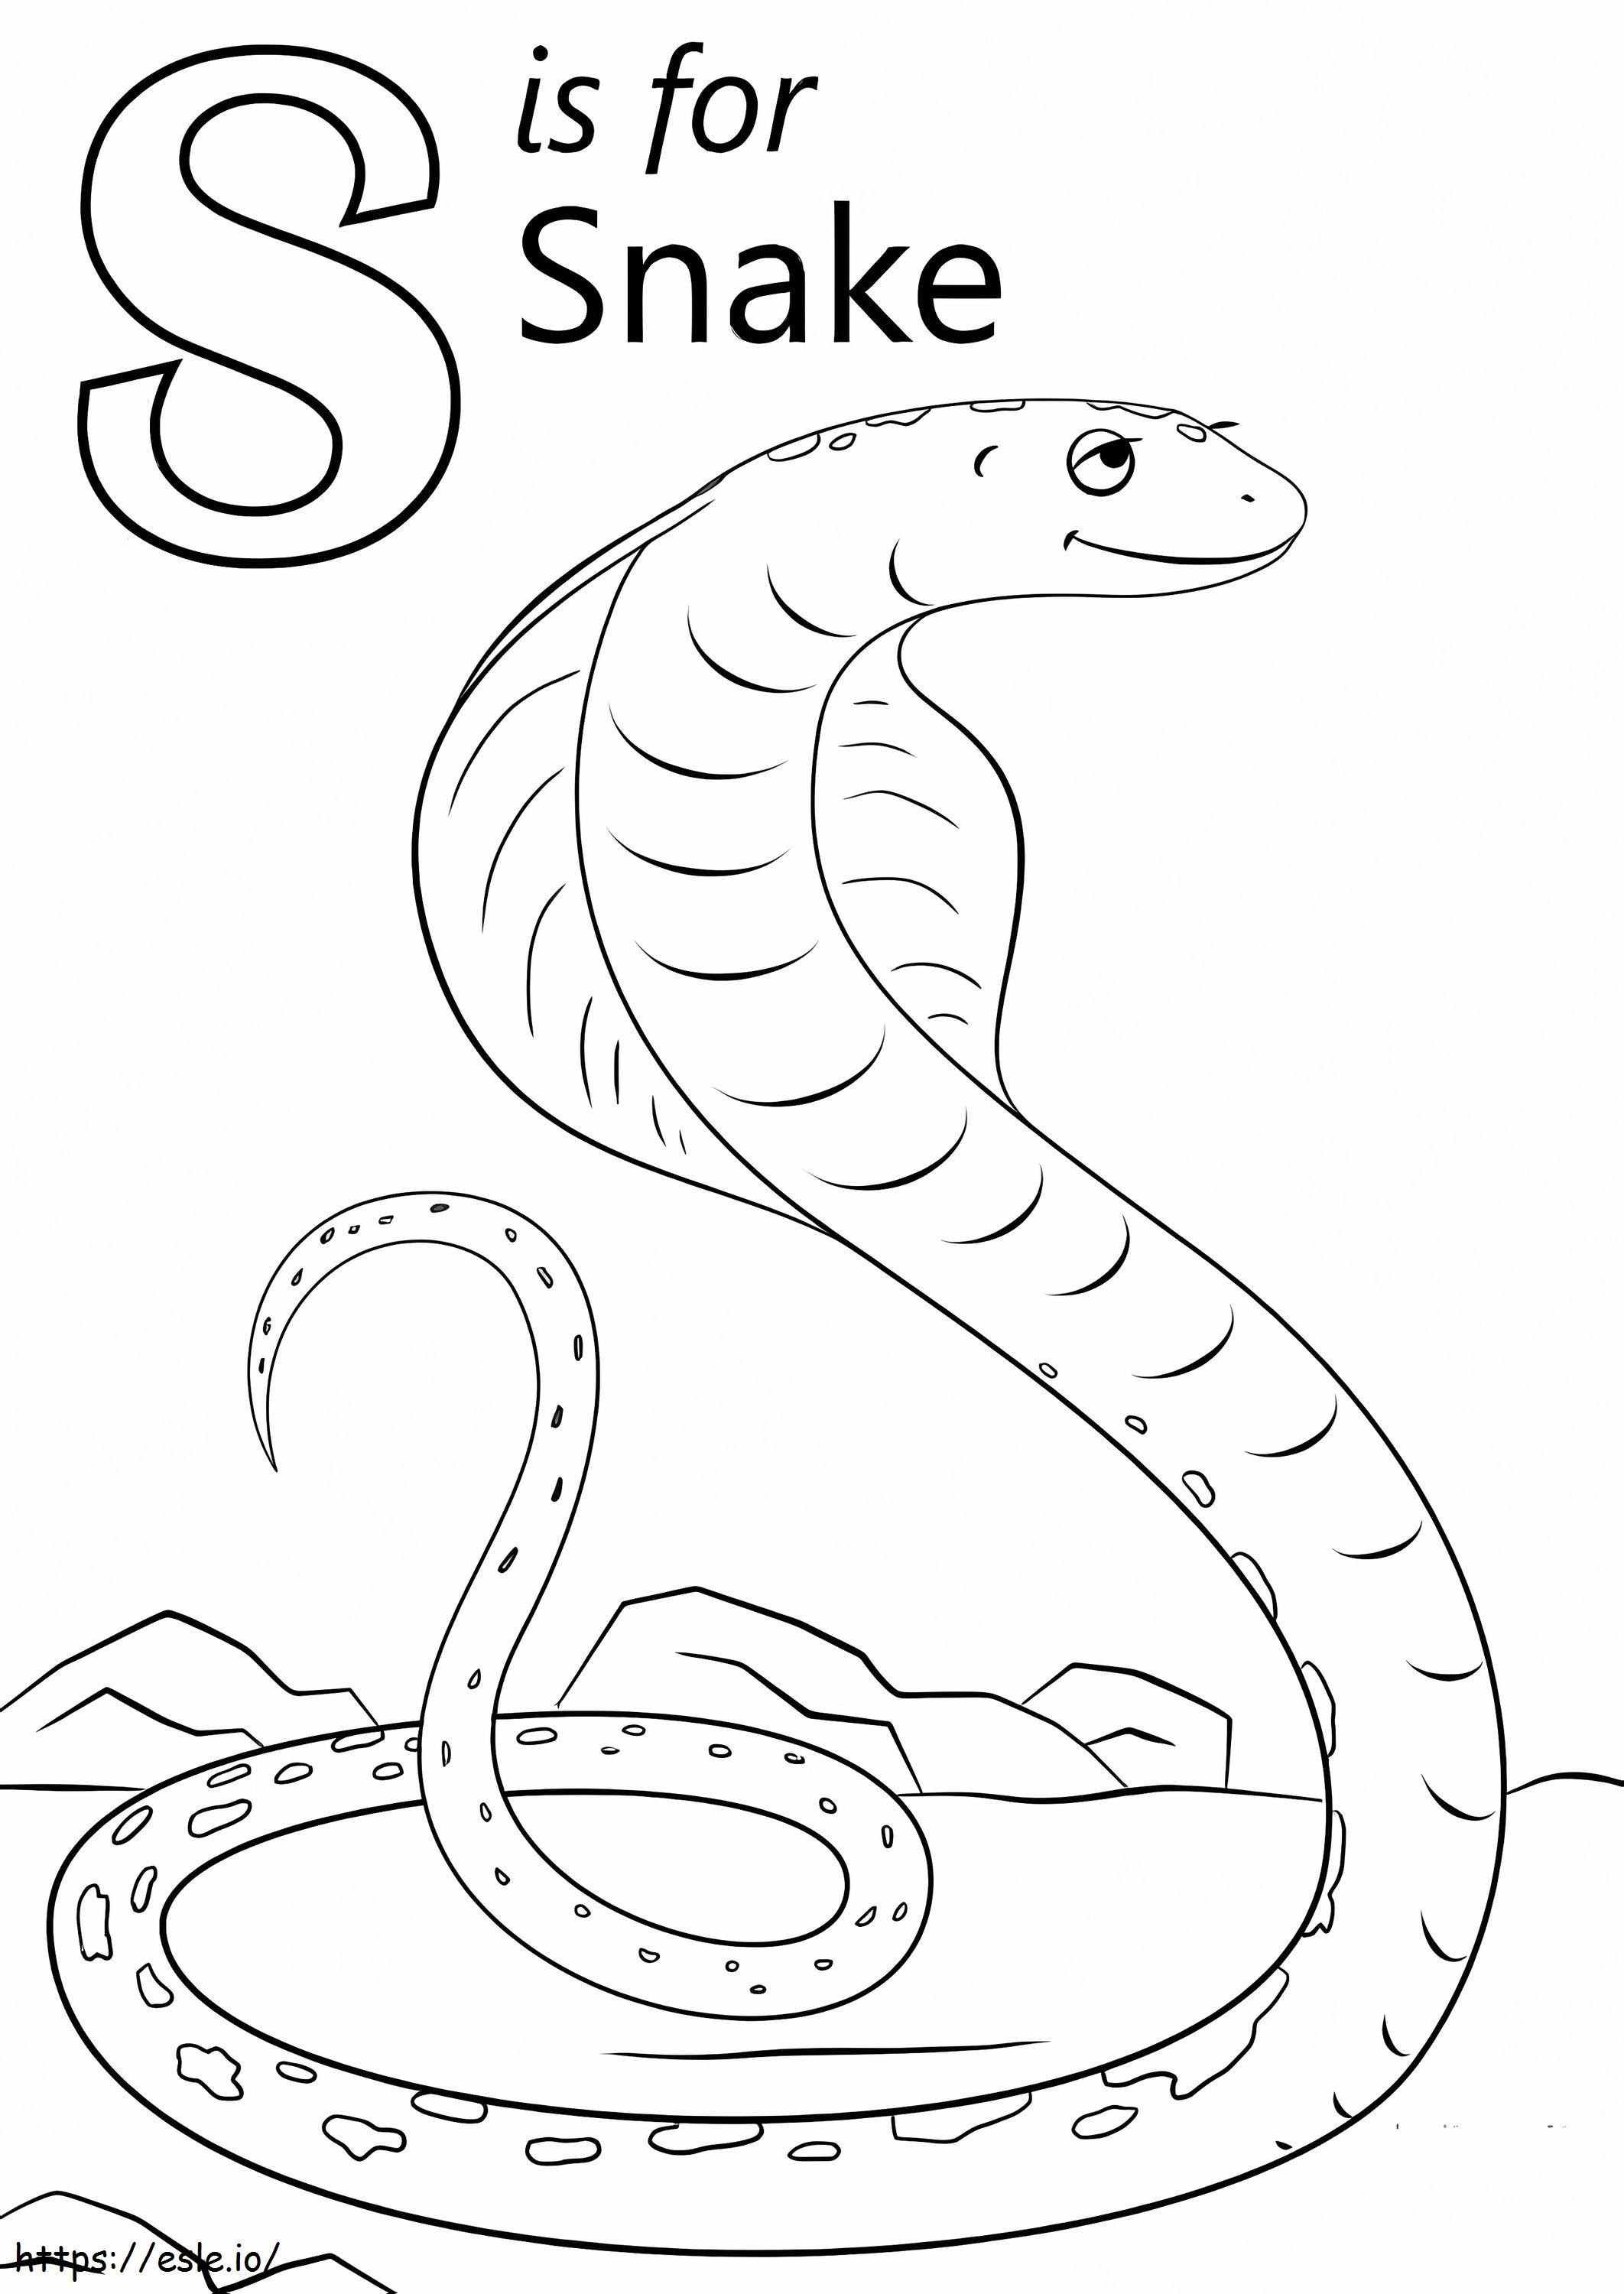 Coloriage Serpent Lettre S à imprimer dessin